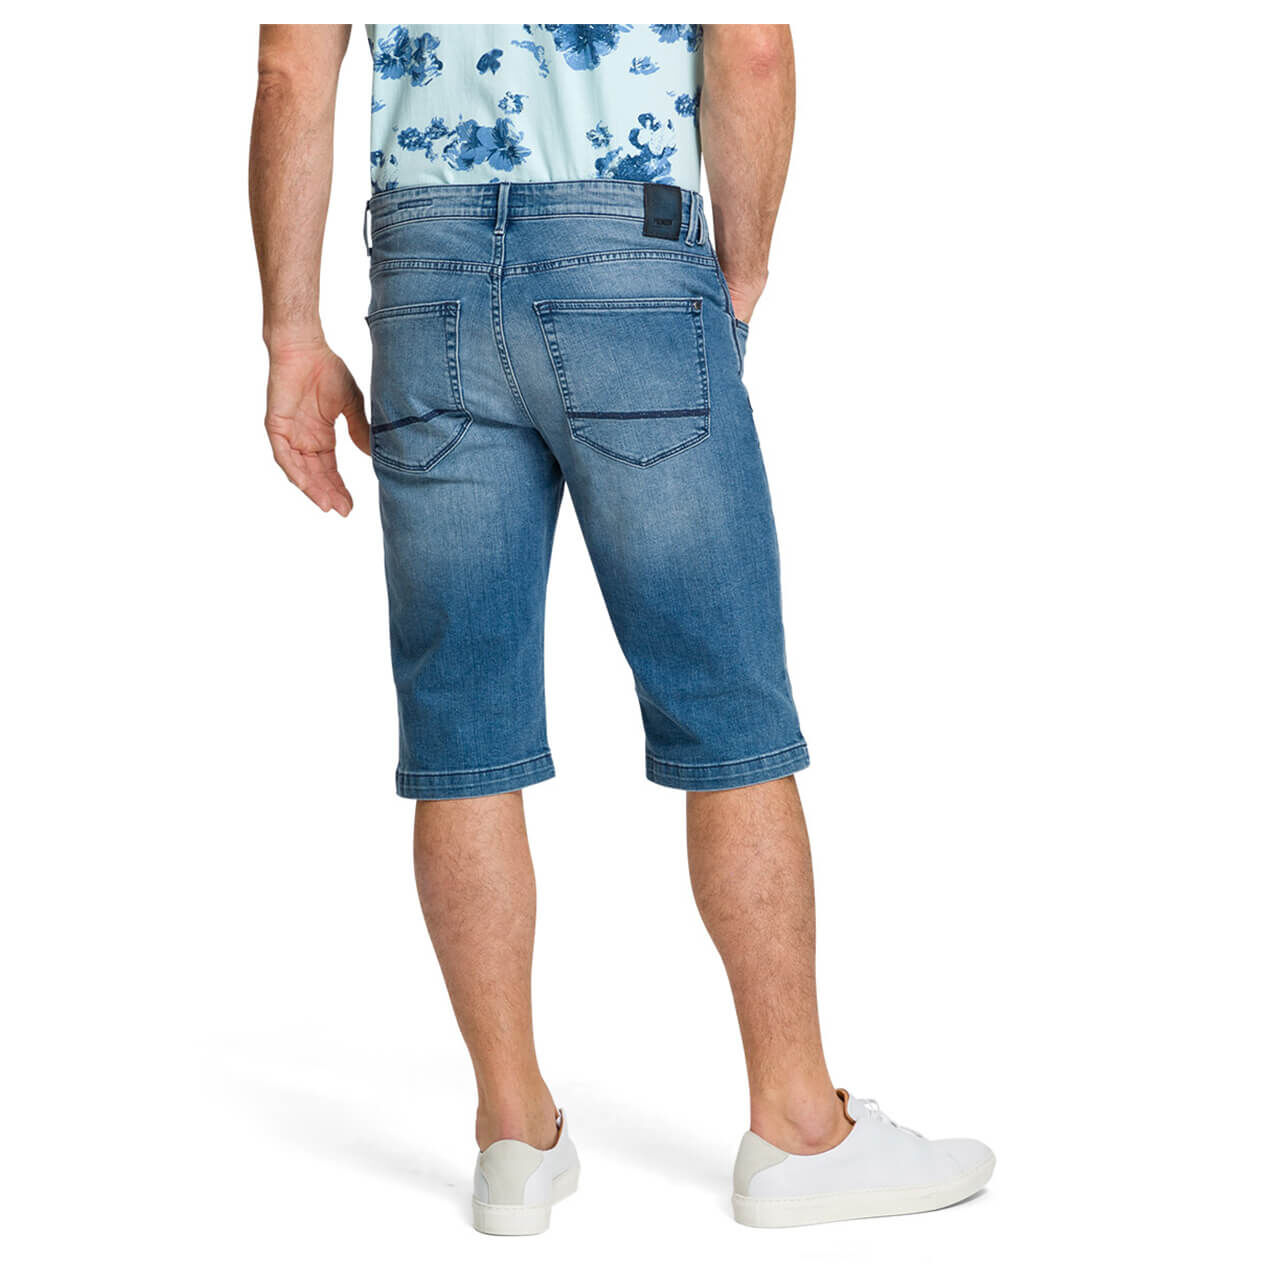 Pioneer Jeans Liam Bermuda für Herren in Hellblau verwaschen, FarbNr.: 6846